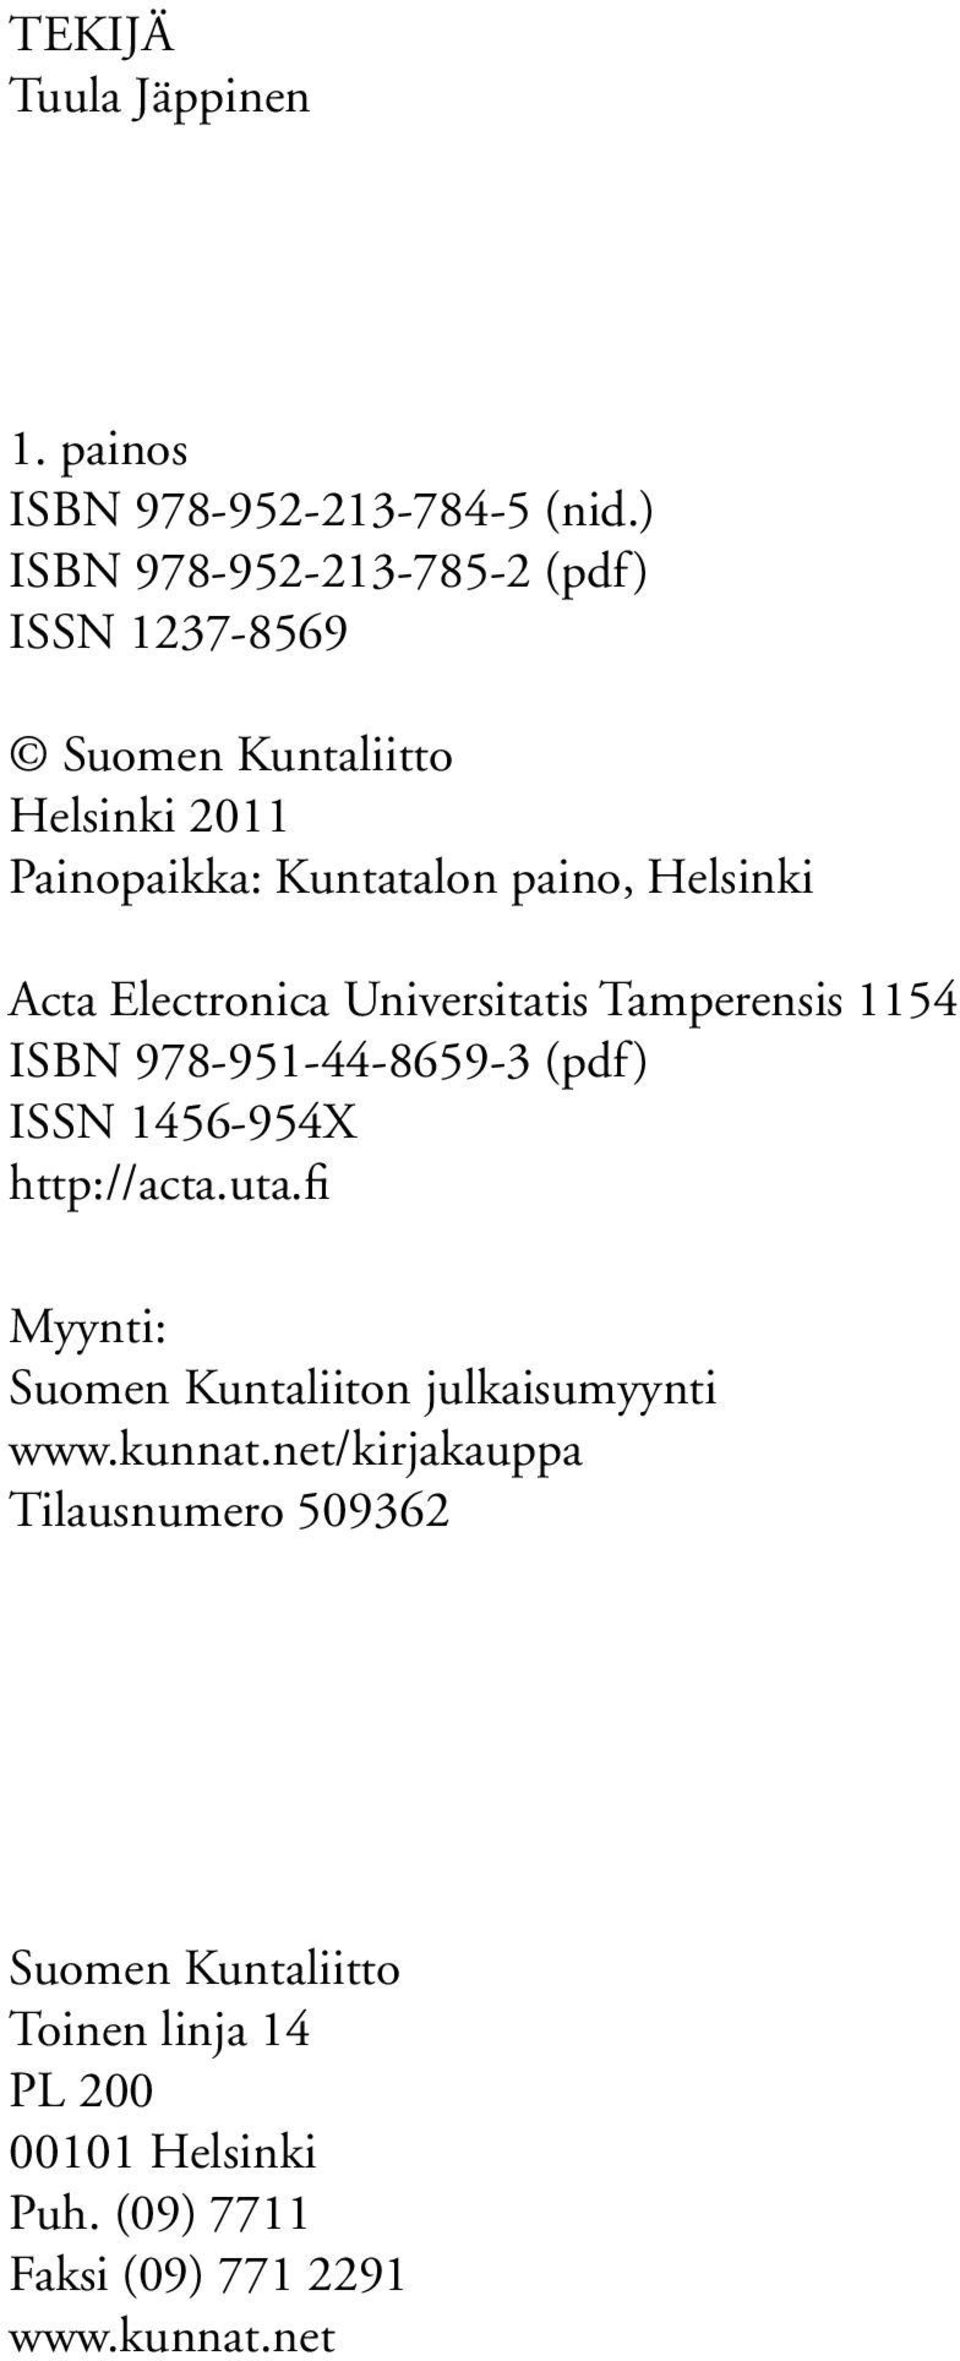 Acta Electronica Universitatis Tamperensis 1154 ISBN 978-951-44-8659-3 (pdf) ISSN 1456-954X http://acta.uta.